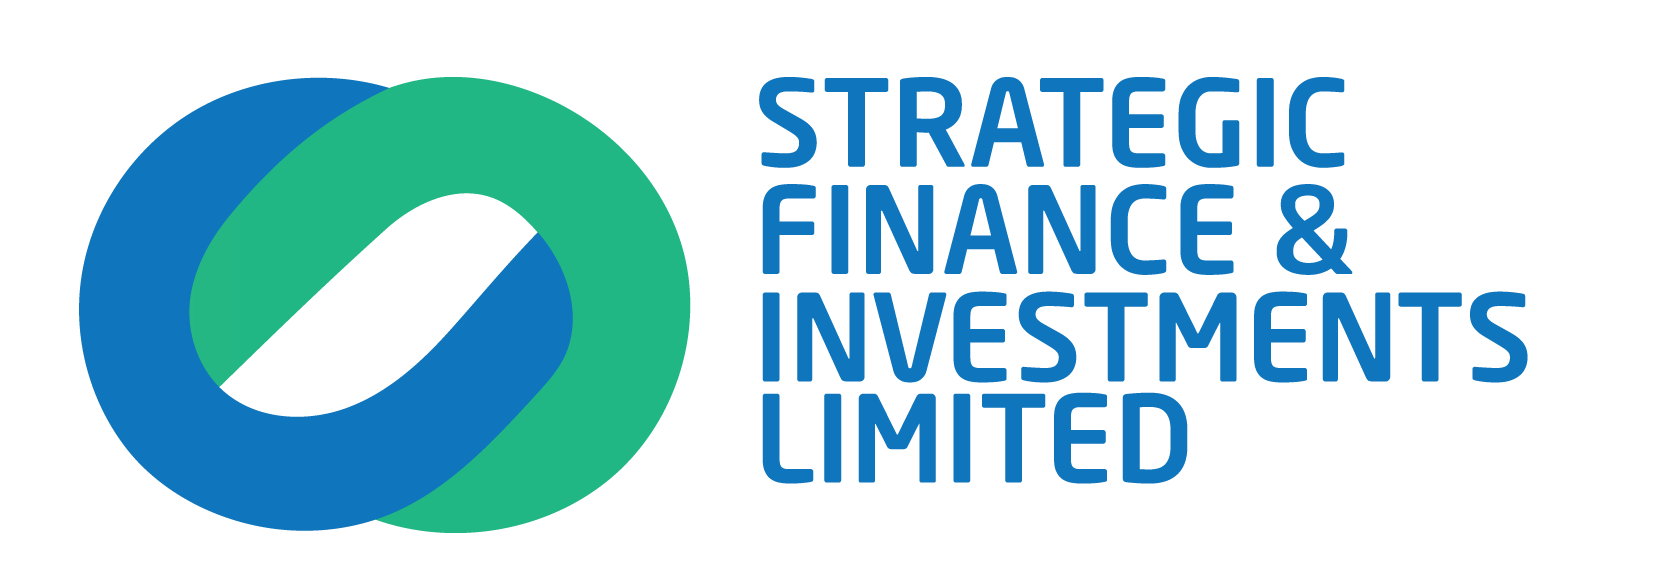 Strategic Finance & Investments Ltd